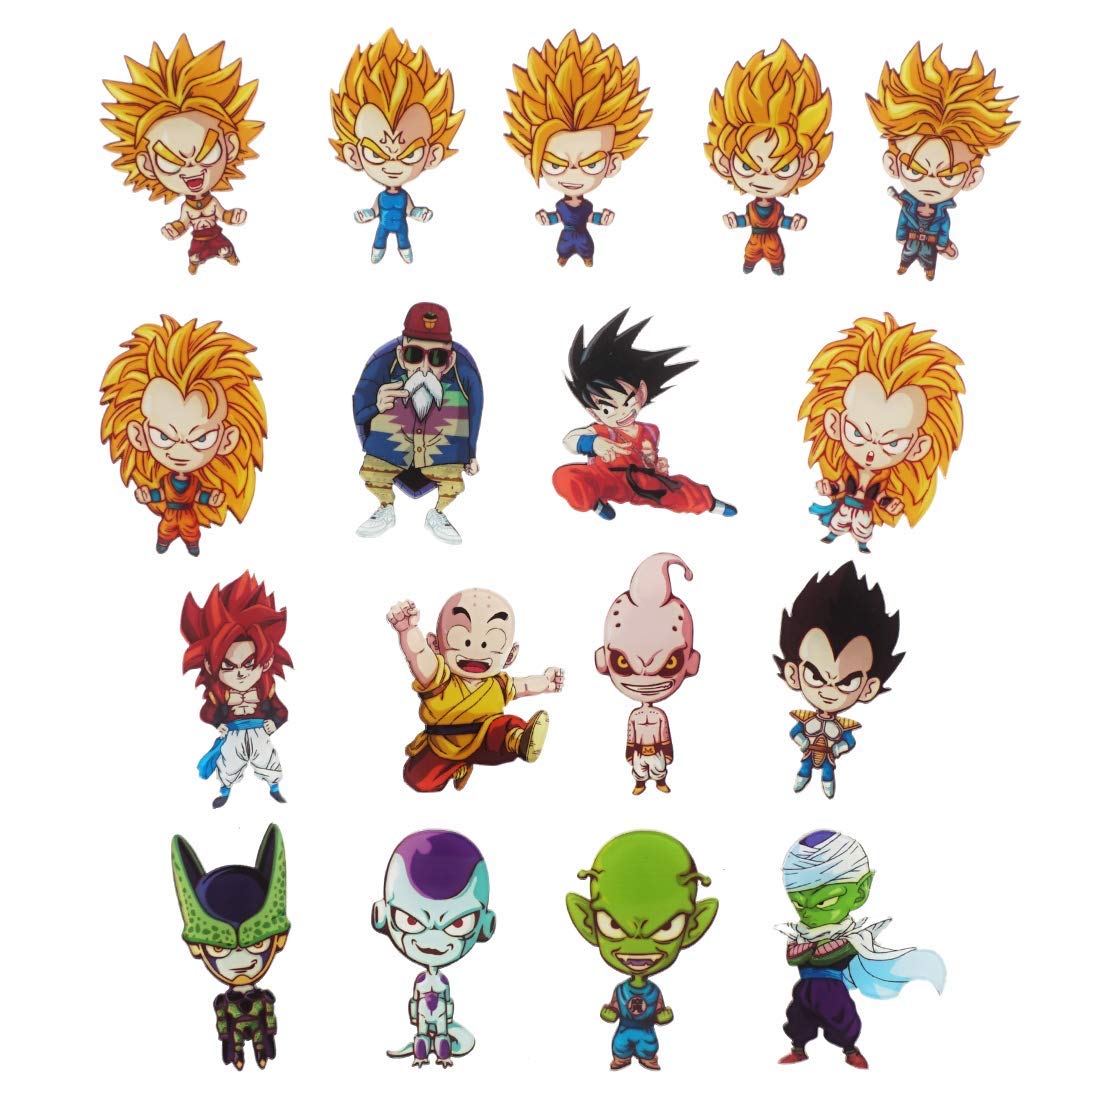 Với những hình ảnh mới nhất của Goku Chibi hứa hẹn sẽ còn làm mưa làm gió trên các trang mạng xã hội và thỏa mãn niềm đam mê của các fans. Hãy xem các bức ảnh độc đáo về nhân vật này để cảm nhận được sức hút đặc biệt của Goku Chibi.